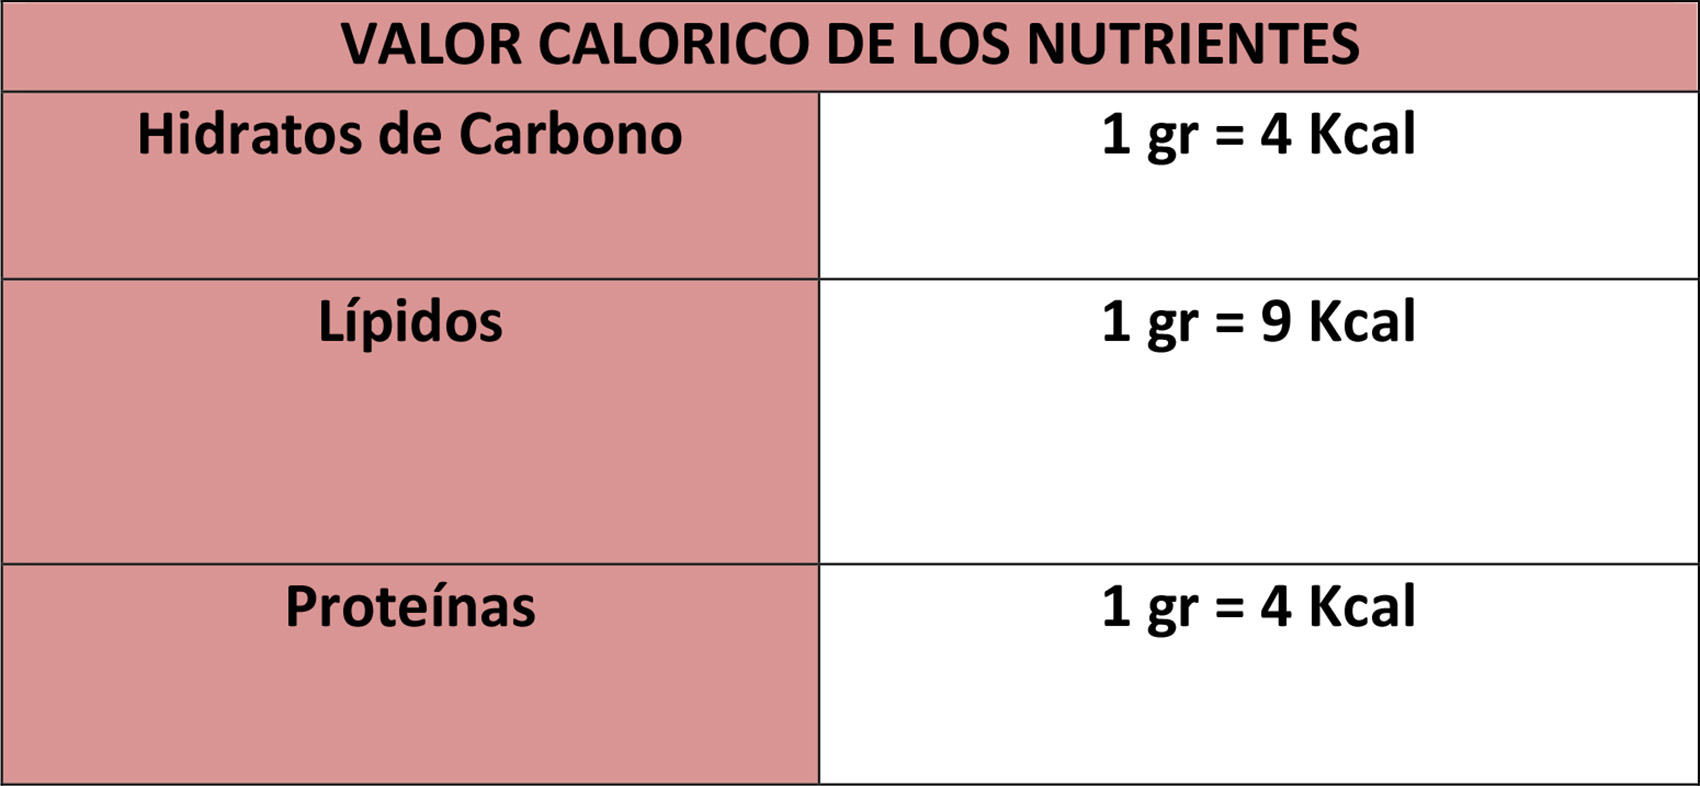 VALOR CALORICO DE LOS NUTRIENTES